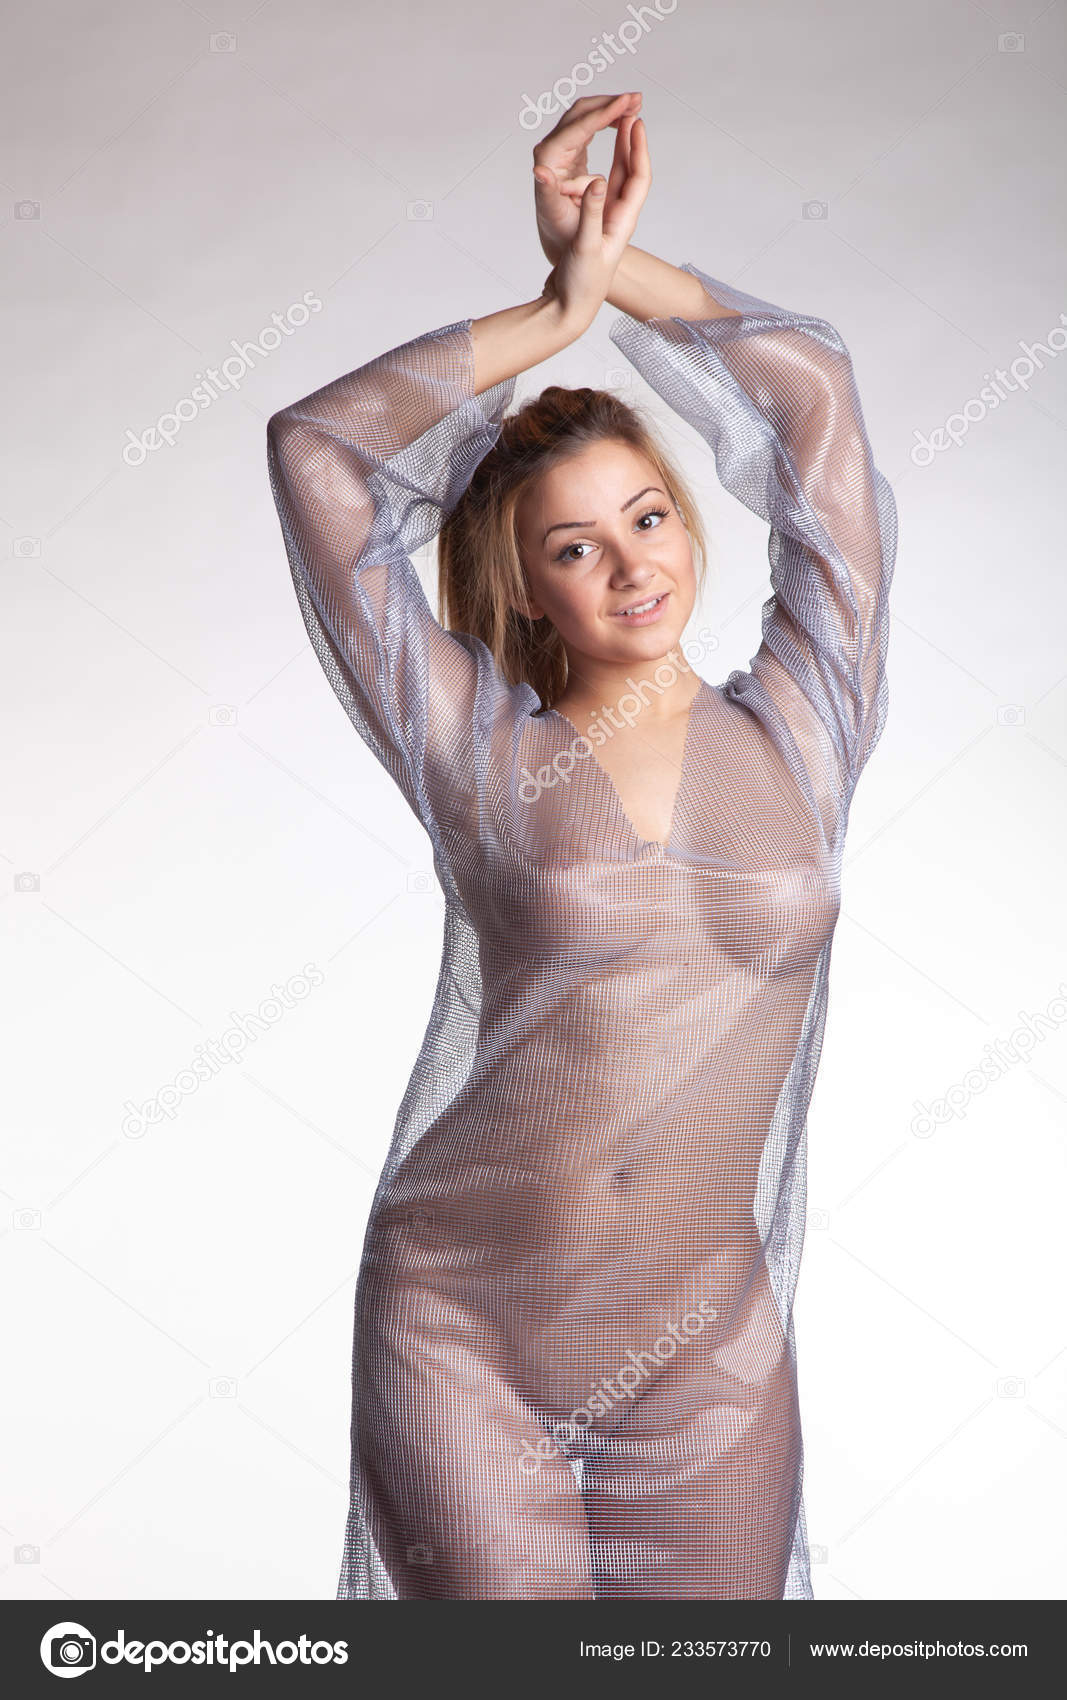 https://st4n.depositphotos.com/10086424/23357/i/1600/depositphotos_233573770-stock-photo-young-beautiful-girl-posing-nude.jpg